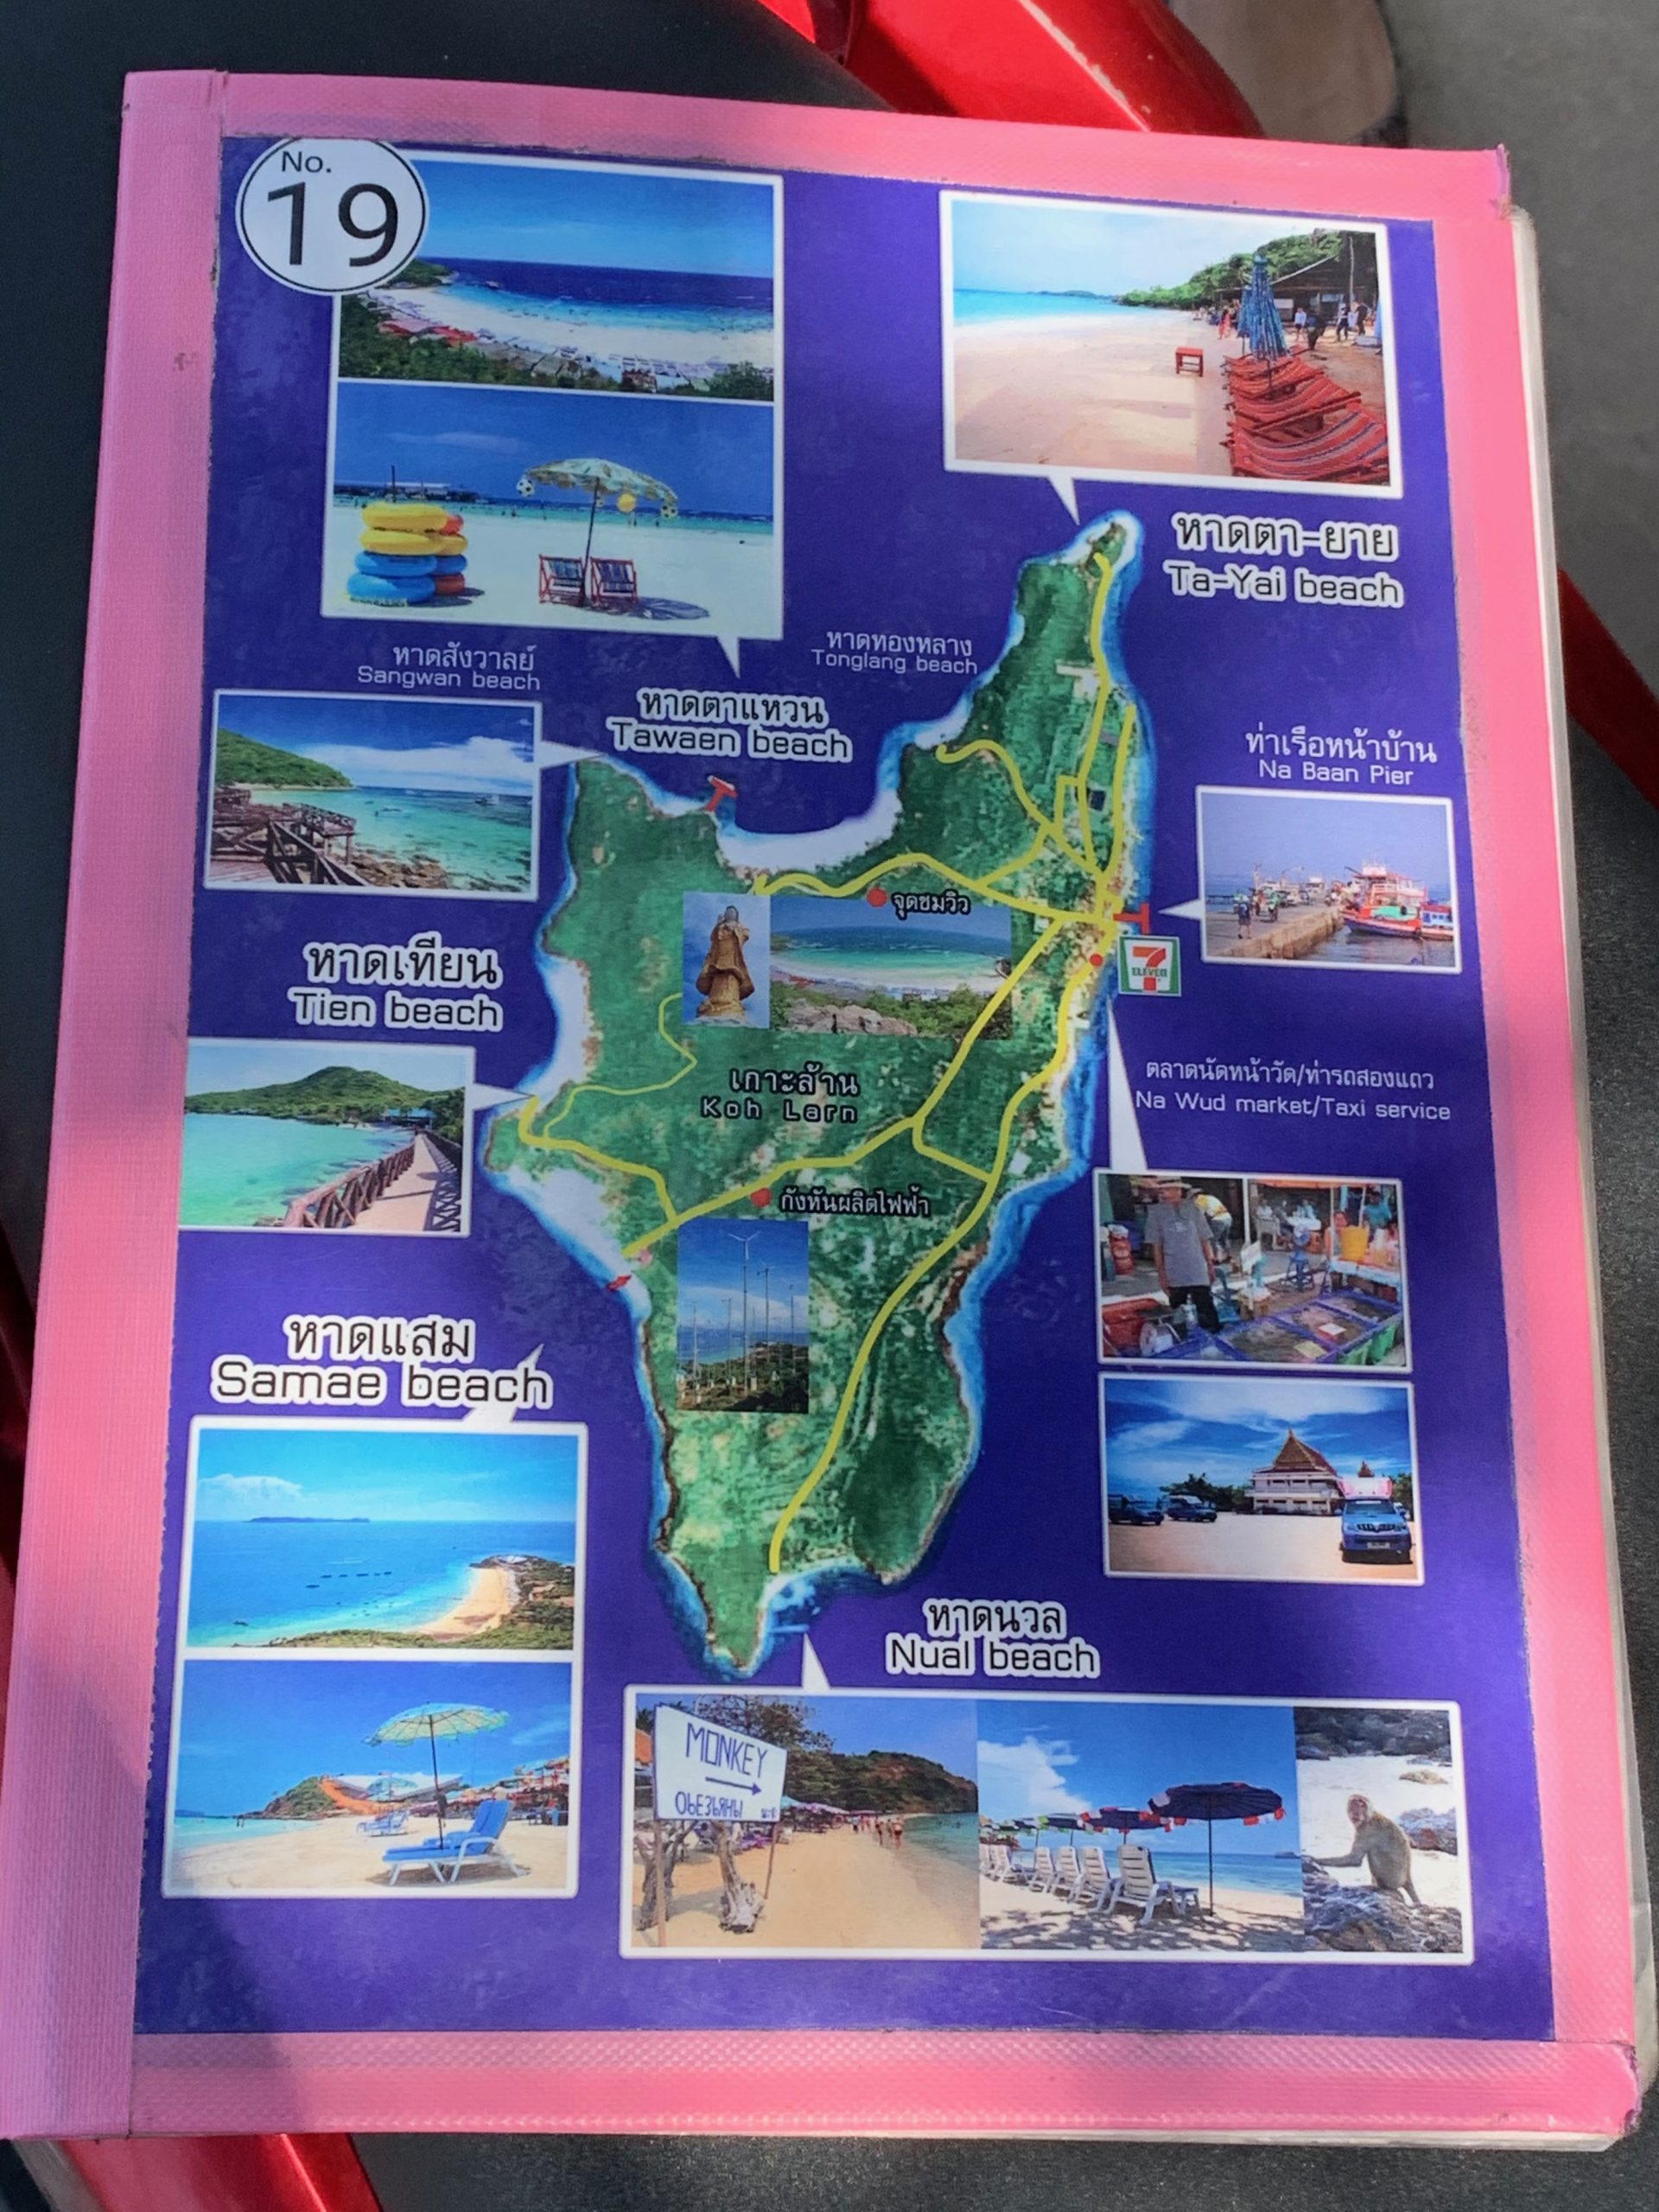 Carte touristique de Koh Larn avec des images des principales plages et attractions.